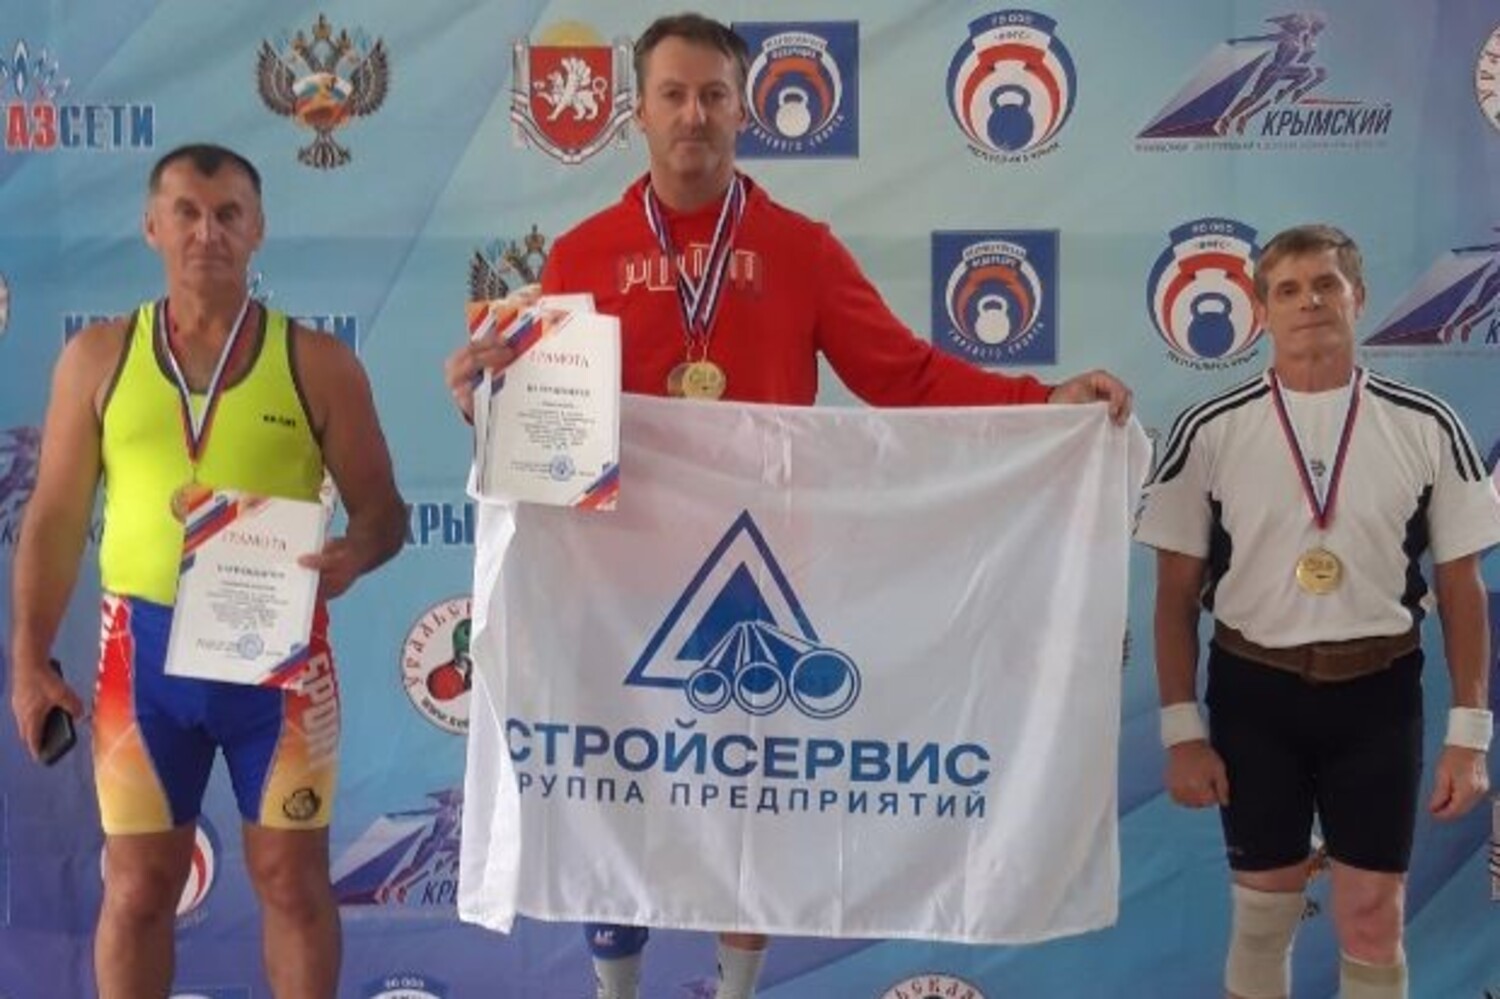 Электрик «Губахинского кокса» дважды победил на чемпионате России по гиревому спорту